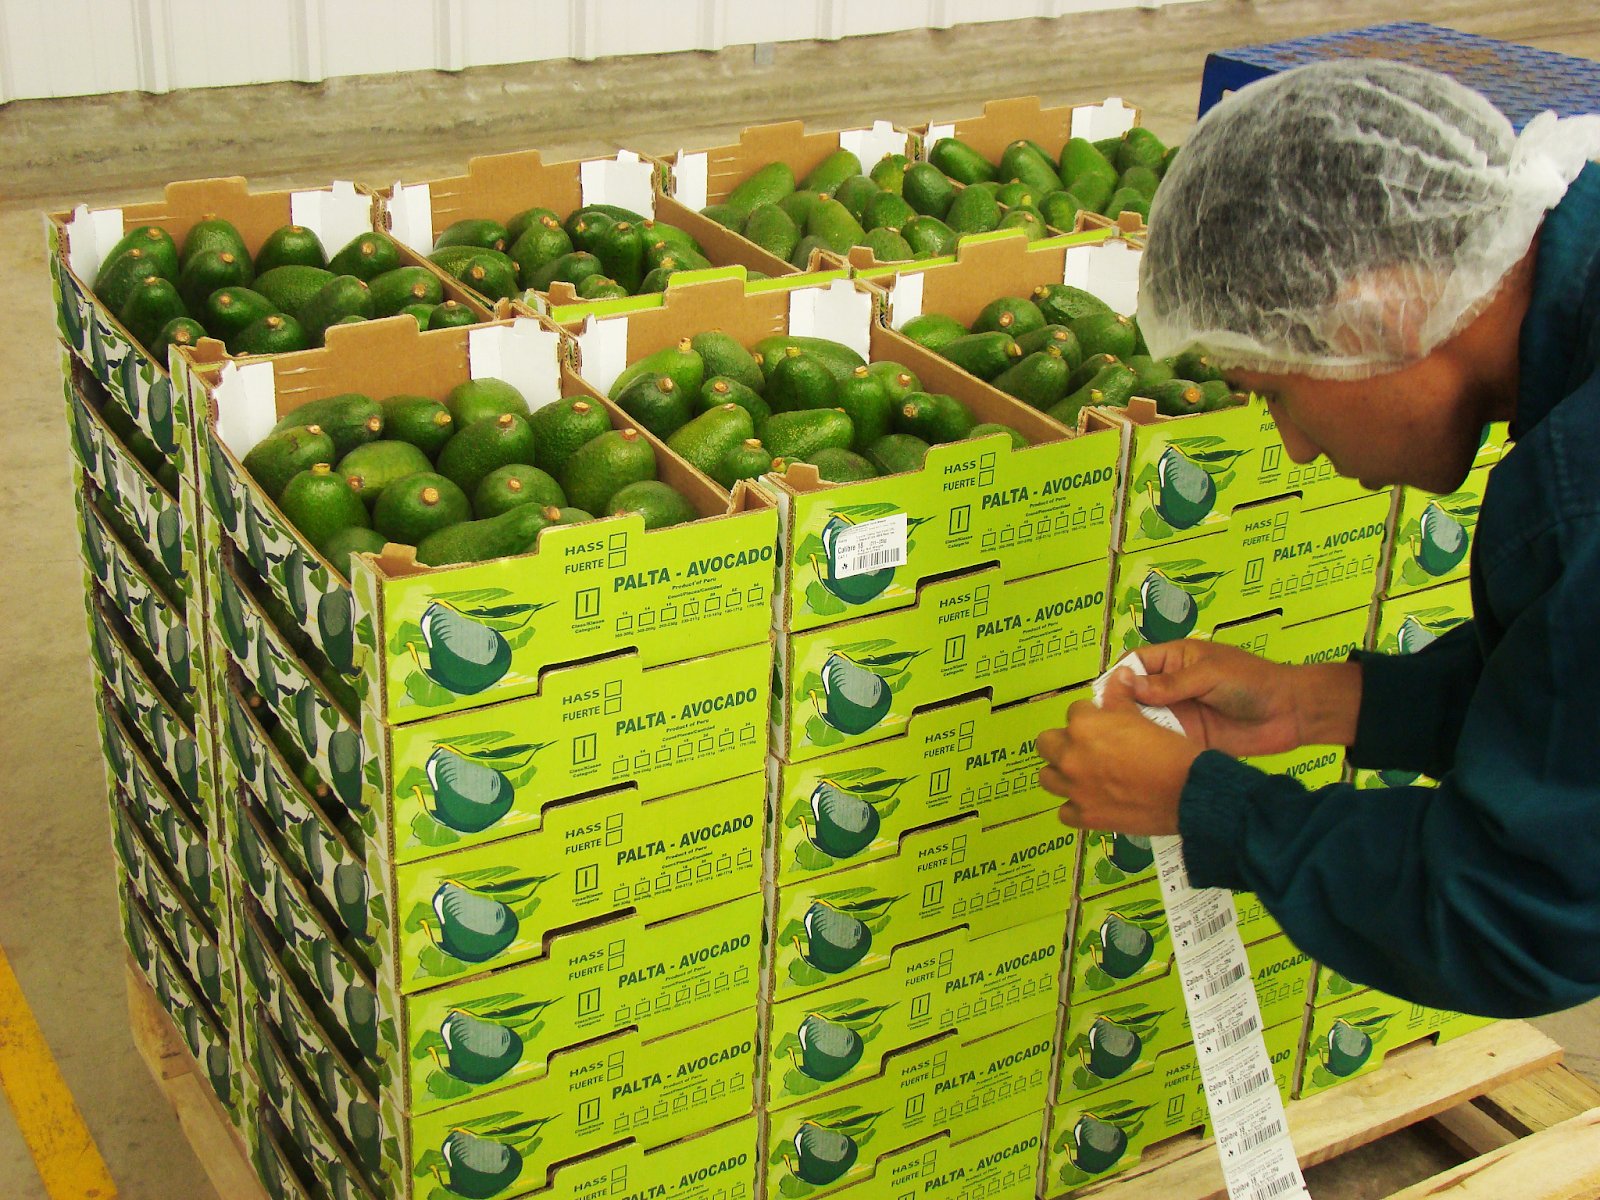 Nasco Express chia sẻ cách bảo quản trái cây tươi ngon giữ nguyên chất lượng